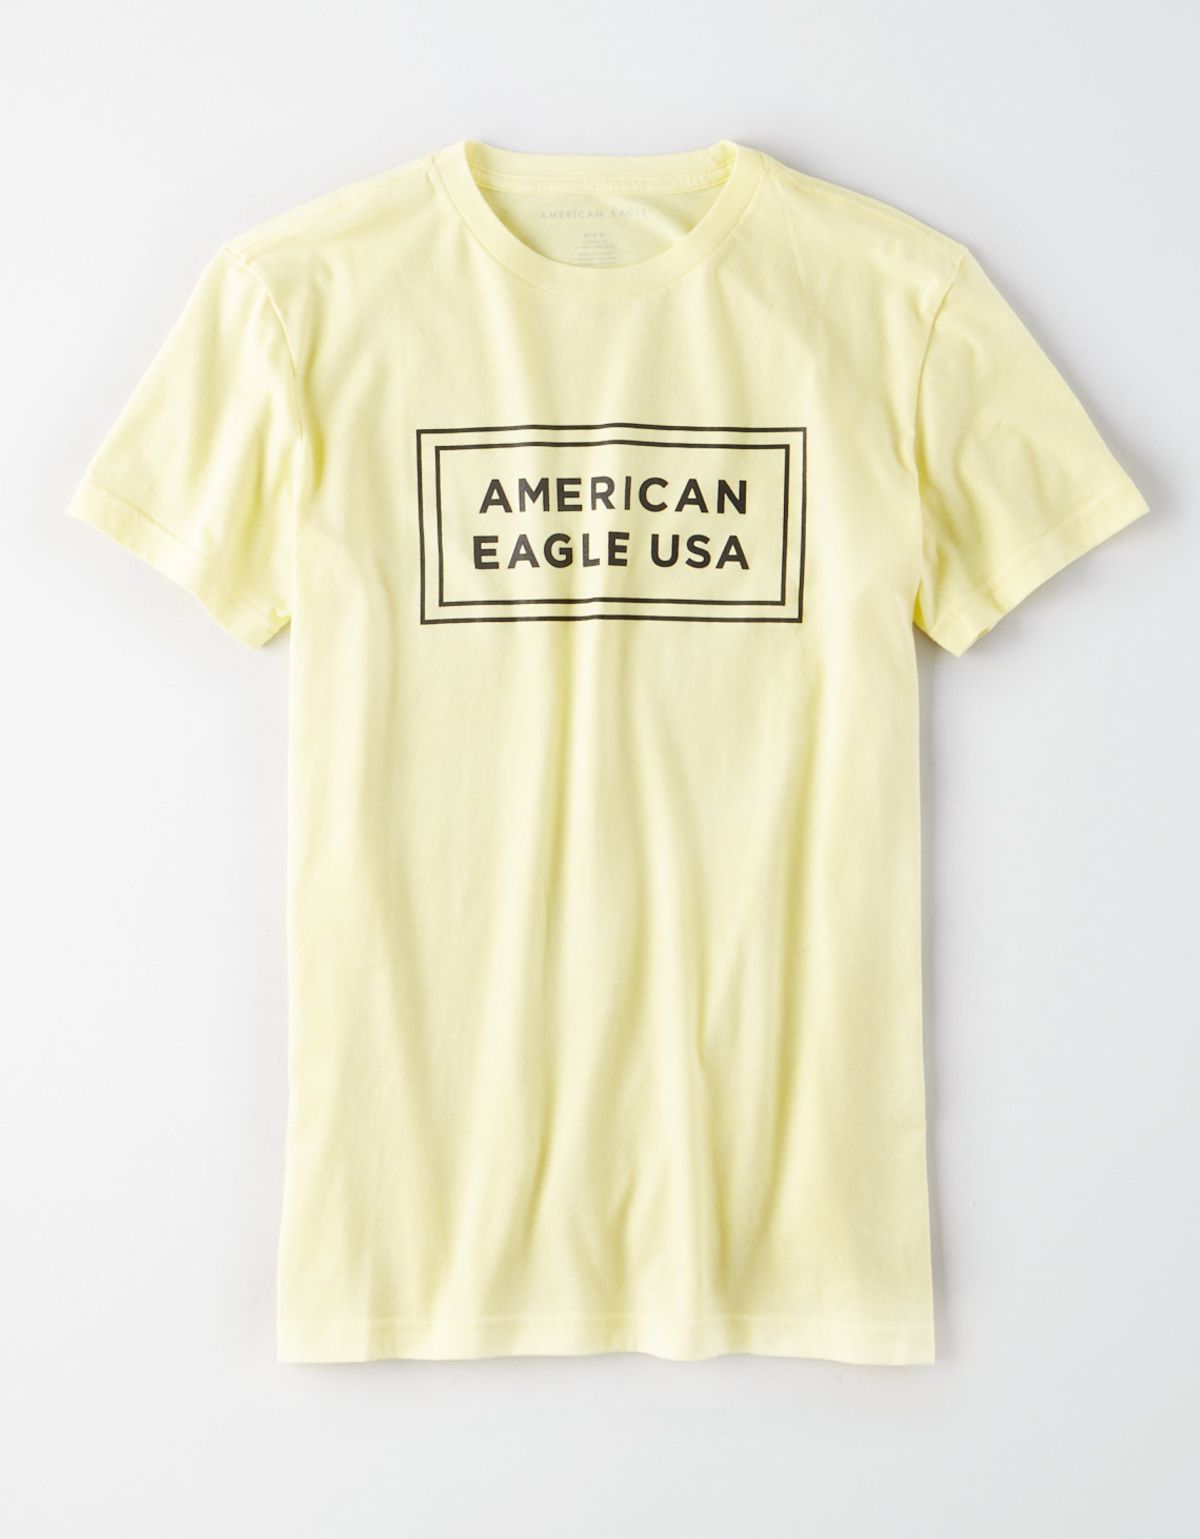  טי שירט לוגו / גברים של AMERICAN EAGLE